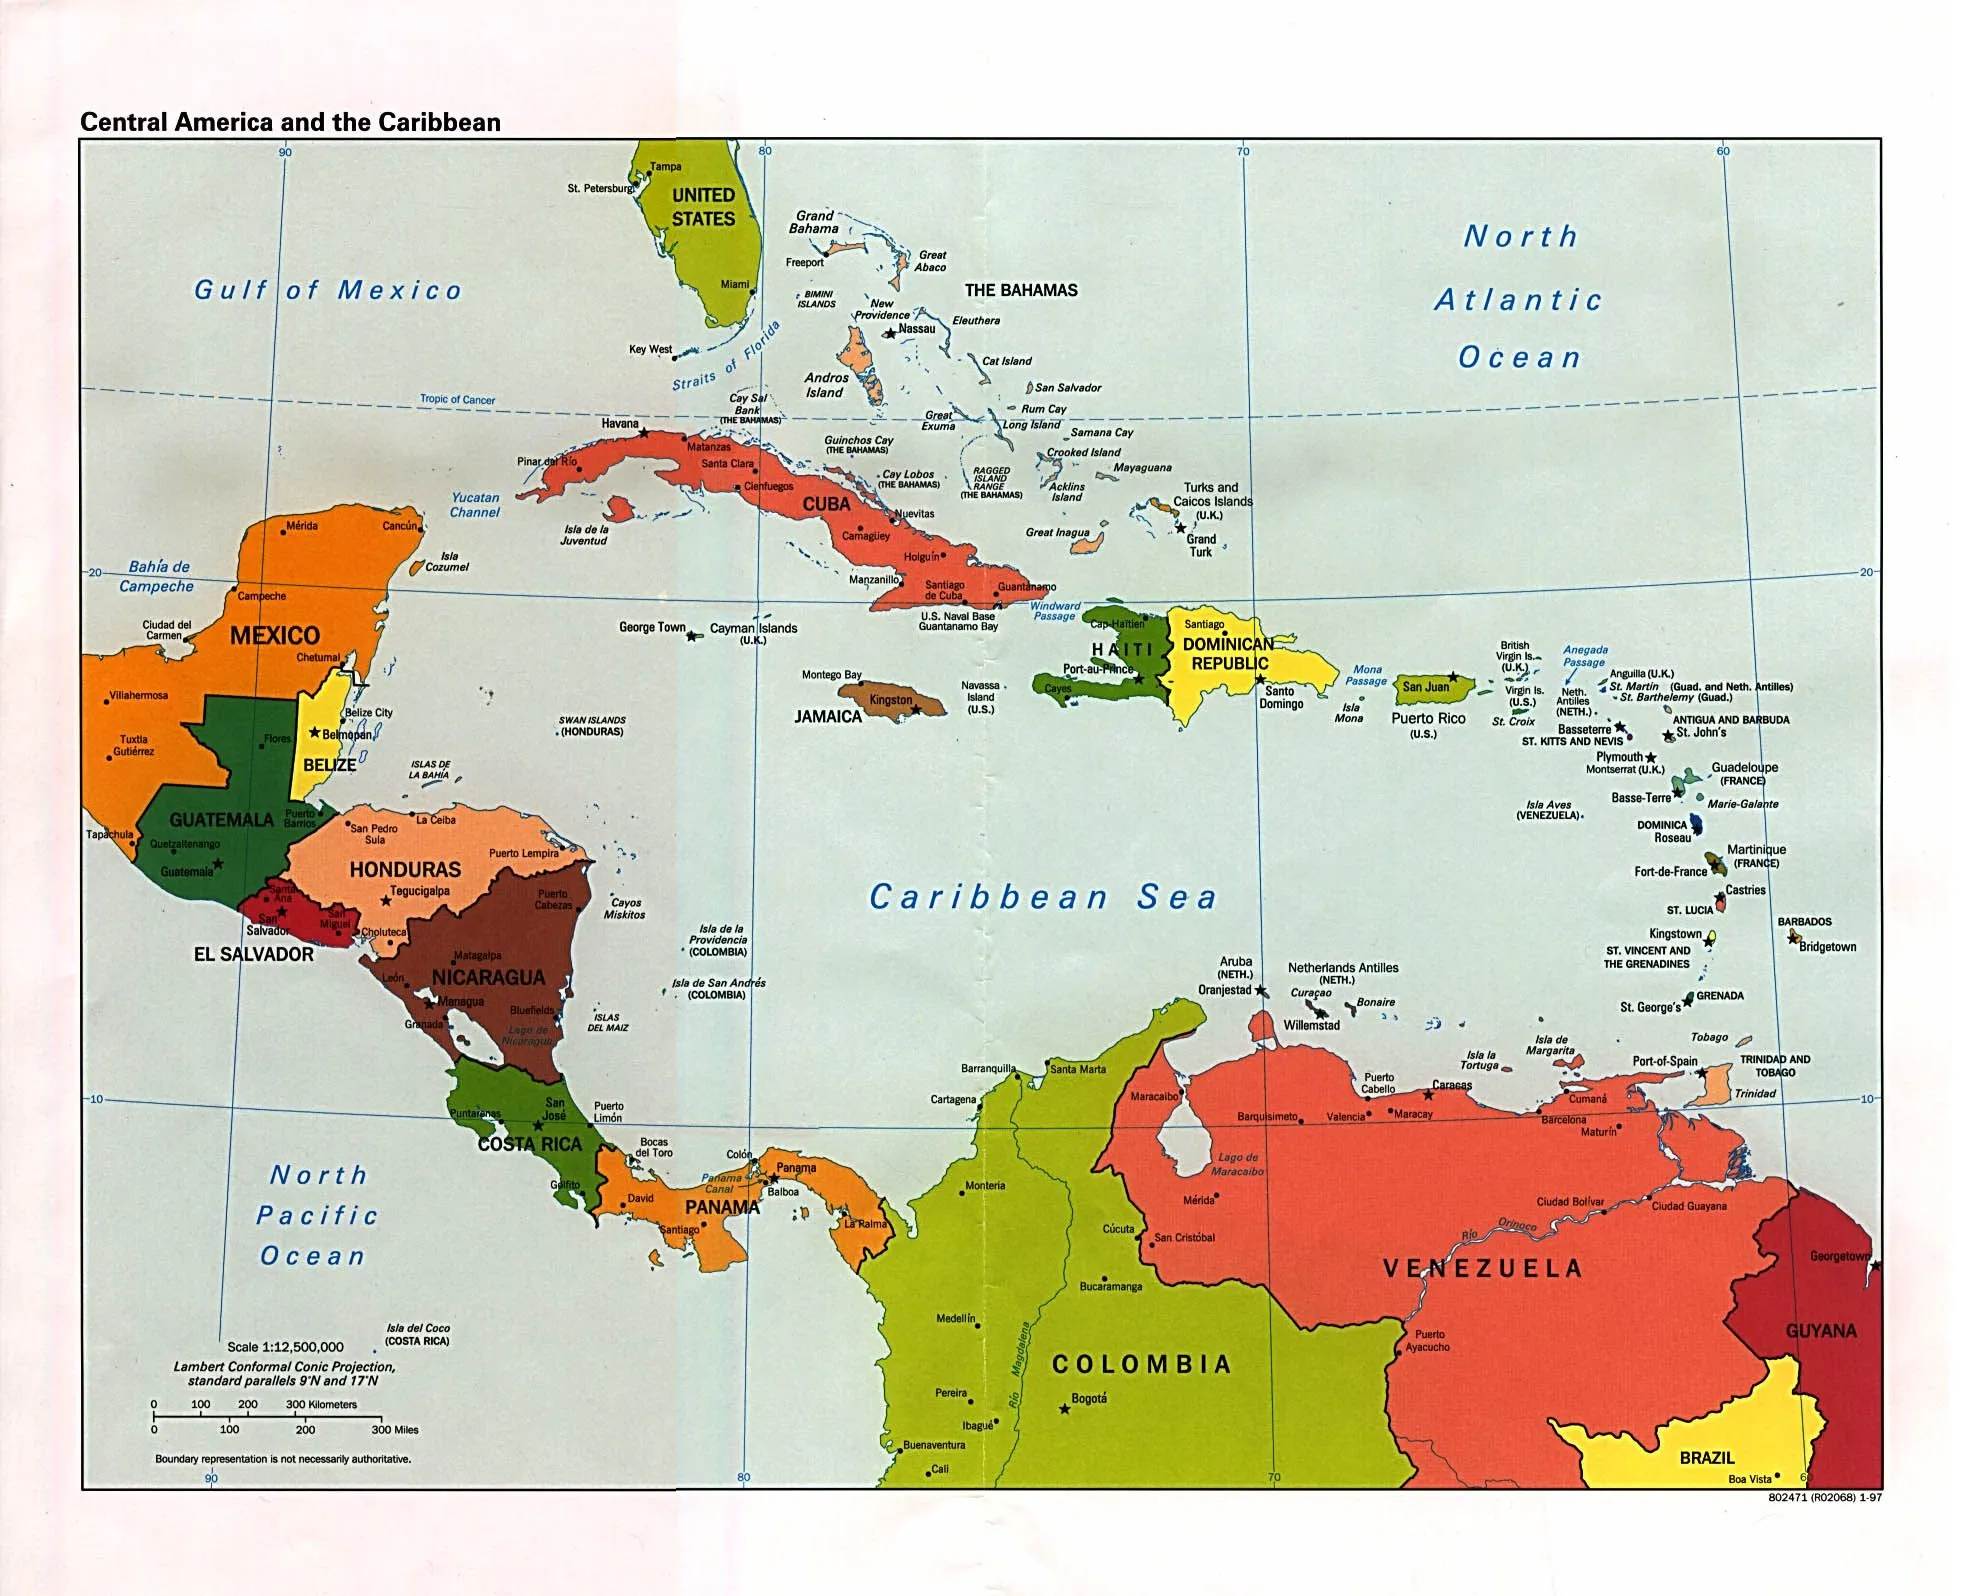 Mapa de Centroamérica #infografia #infographic #maps | TICs y ...